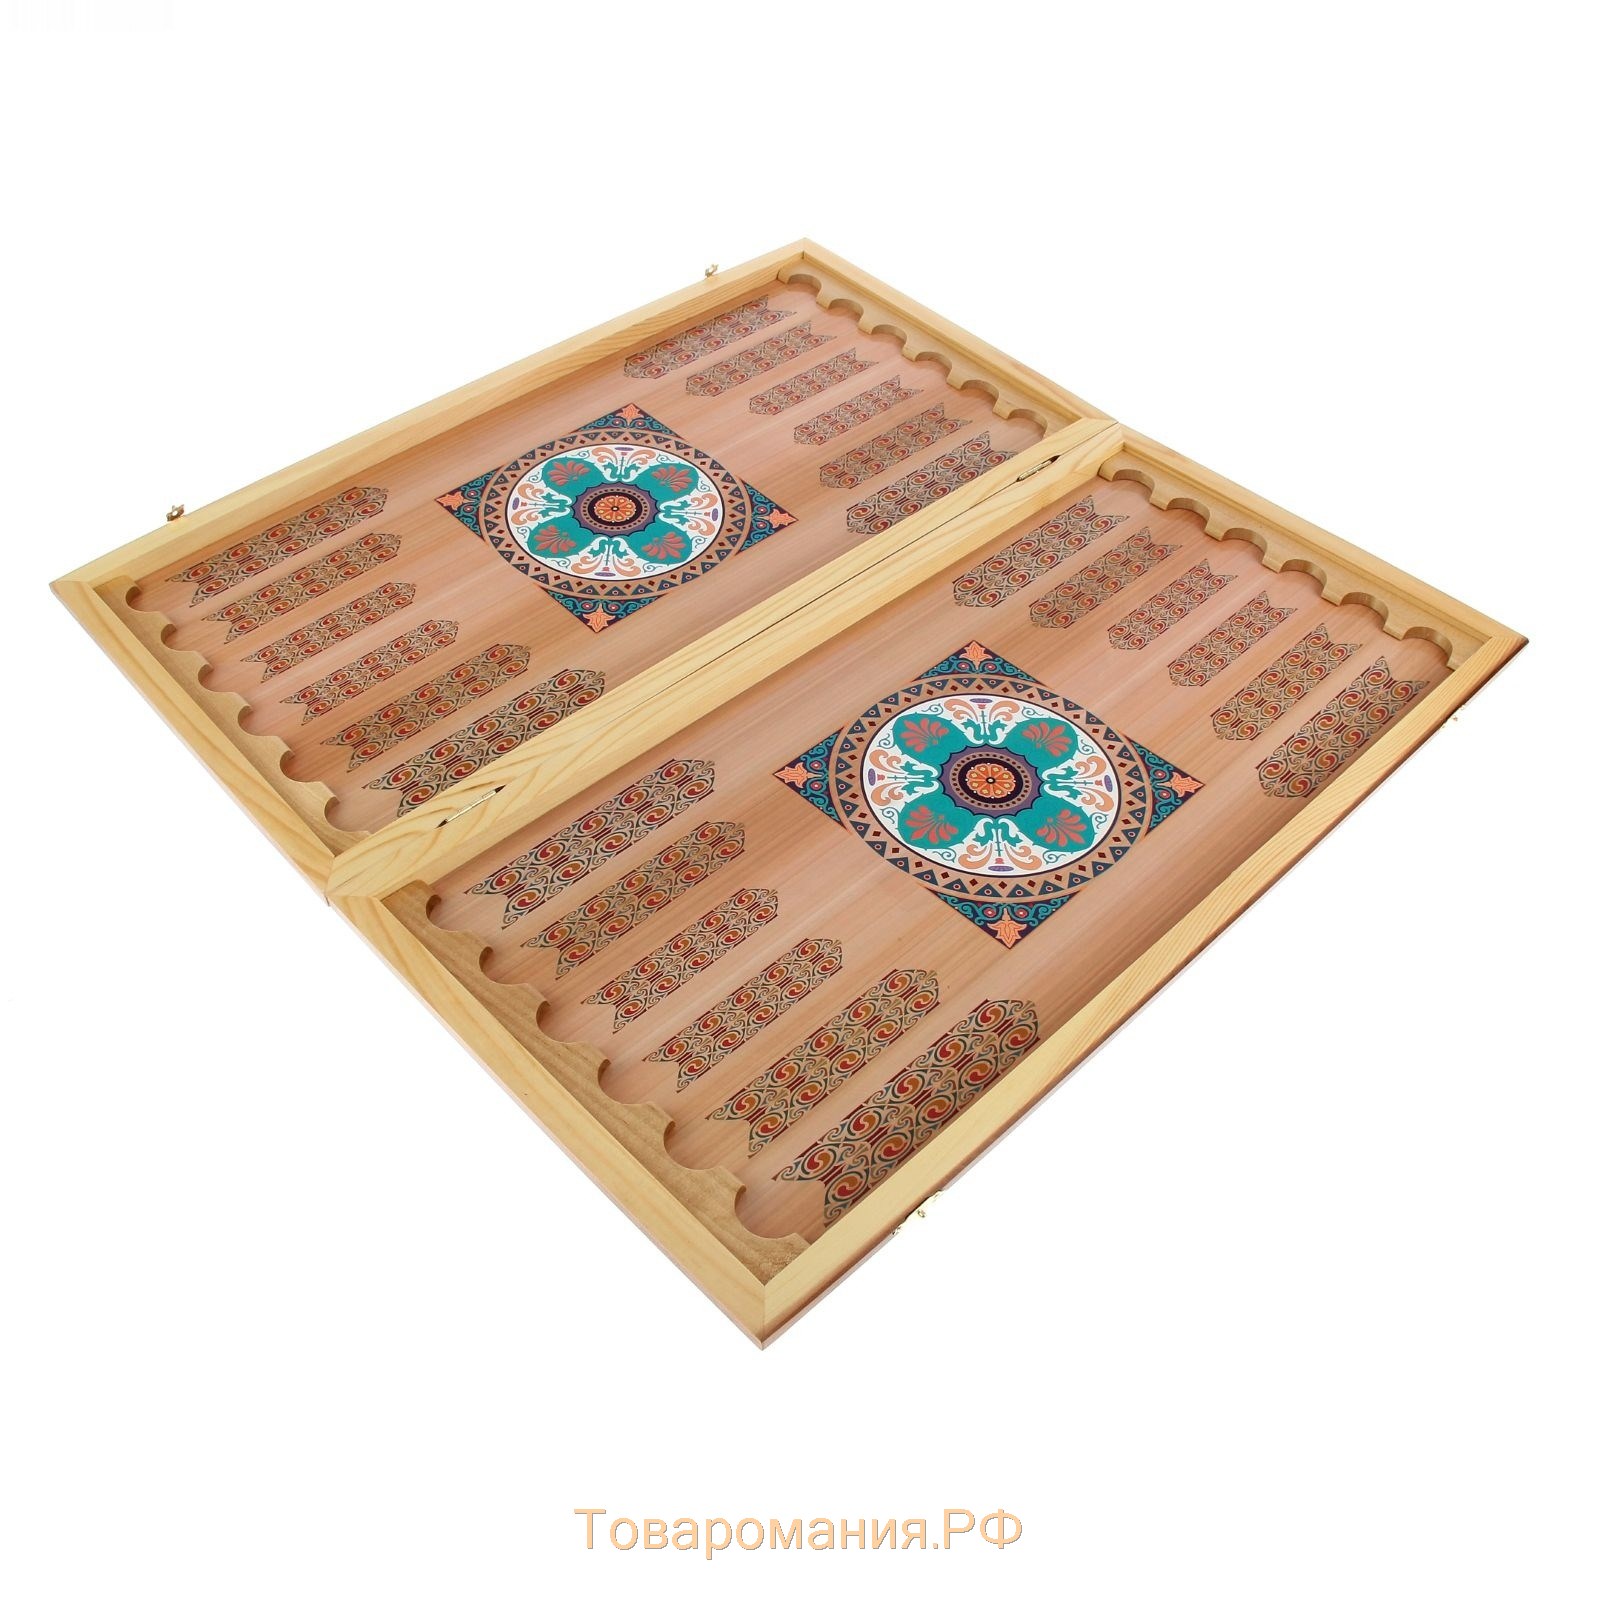 Нарды "Гладиатор", деревянная доска 40 х 40 см, с полем для игры в шашки